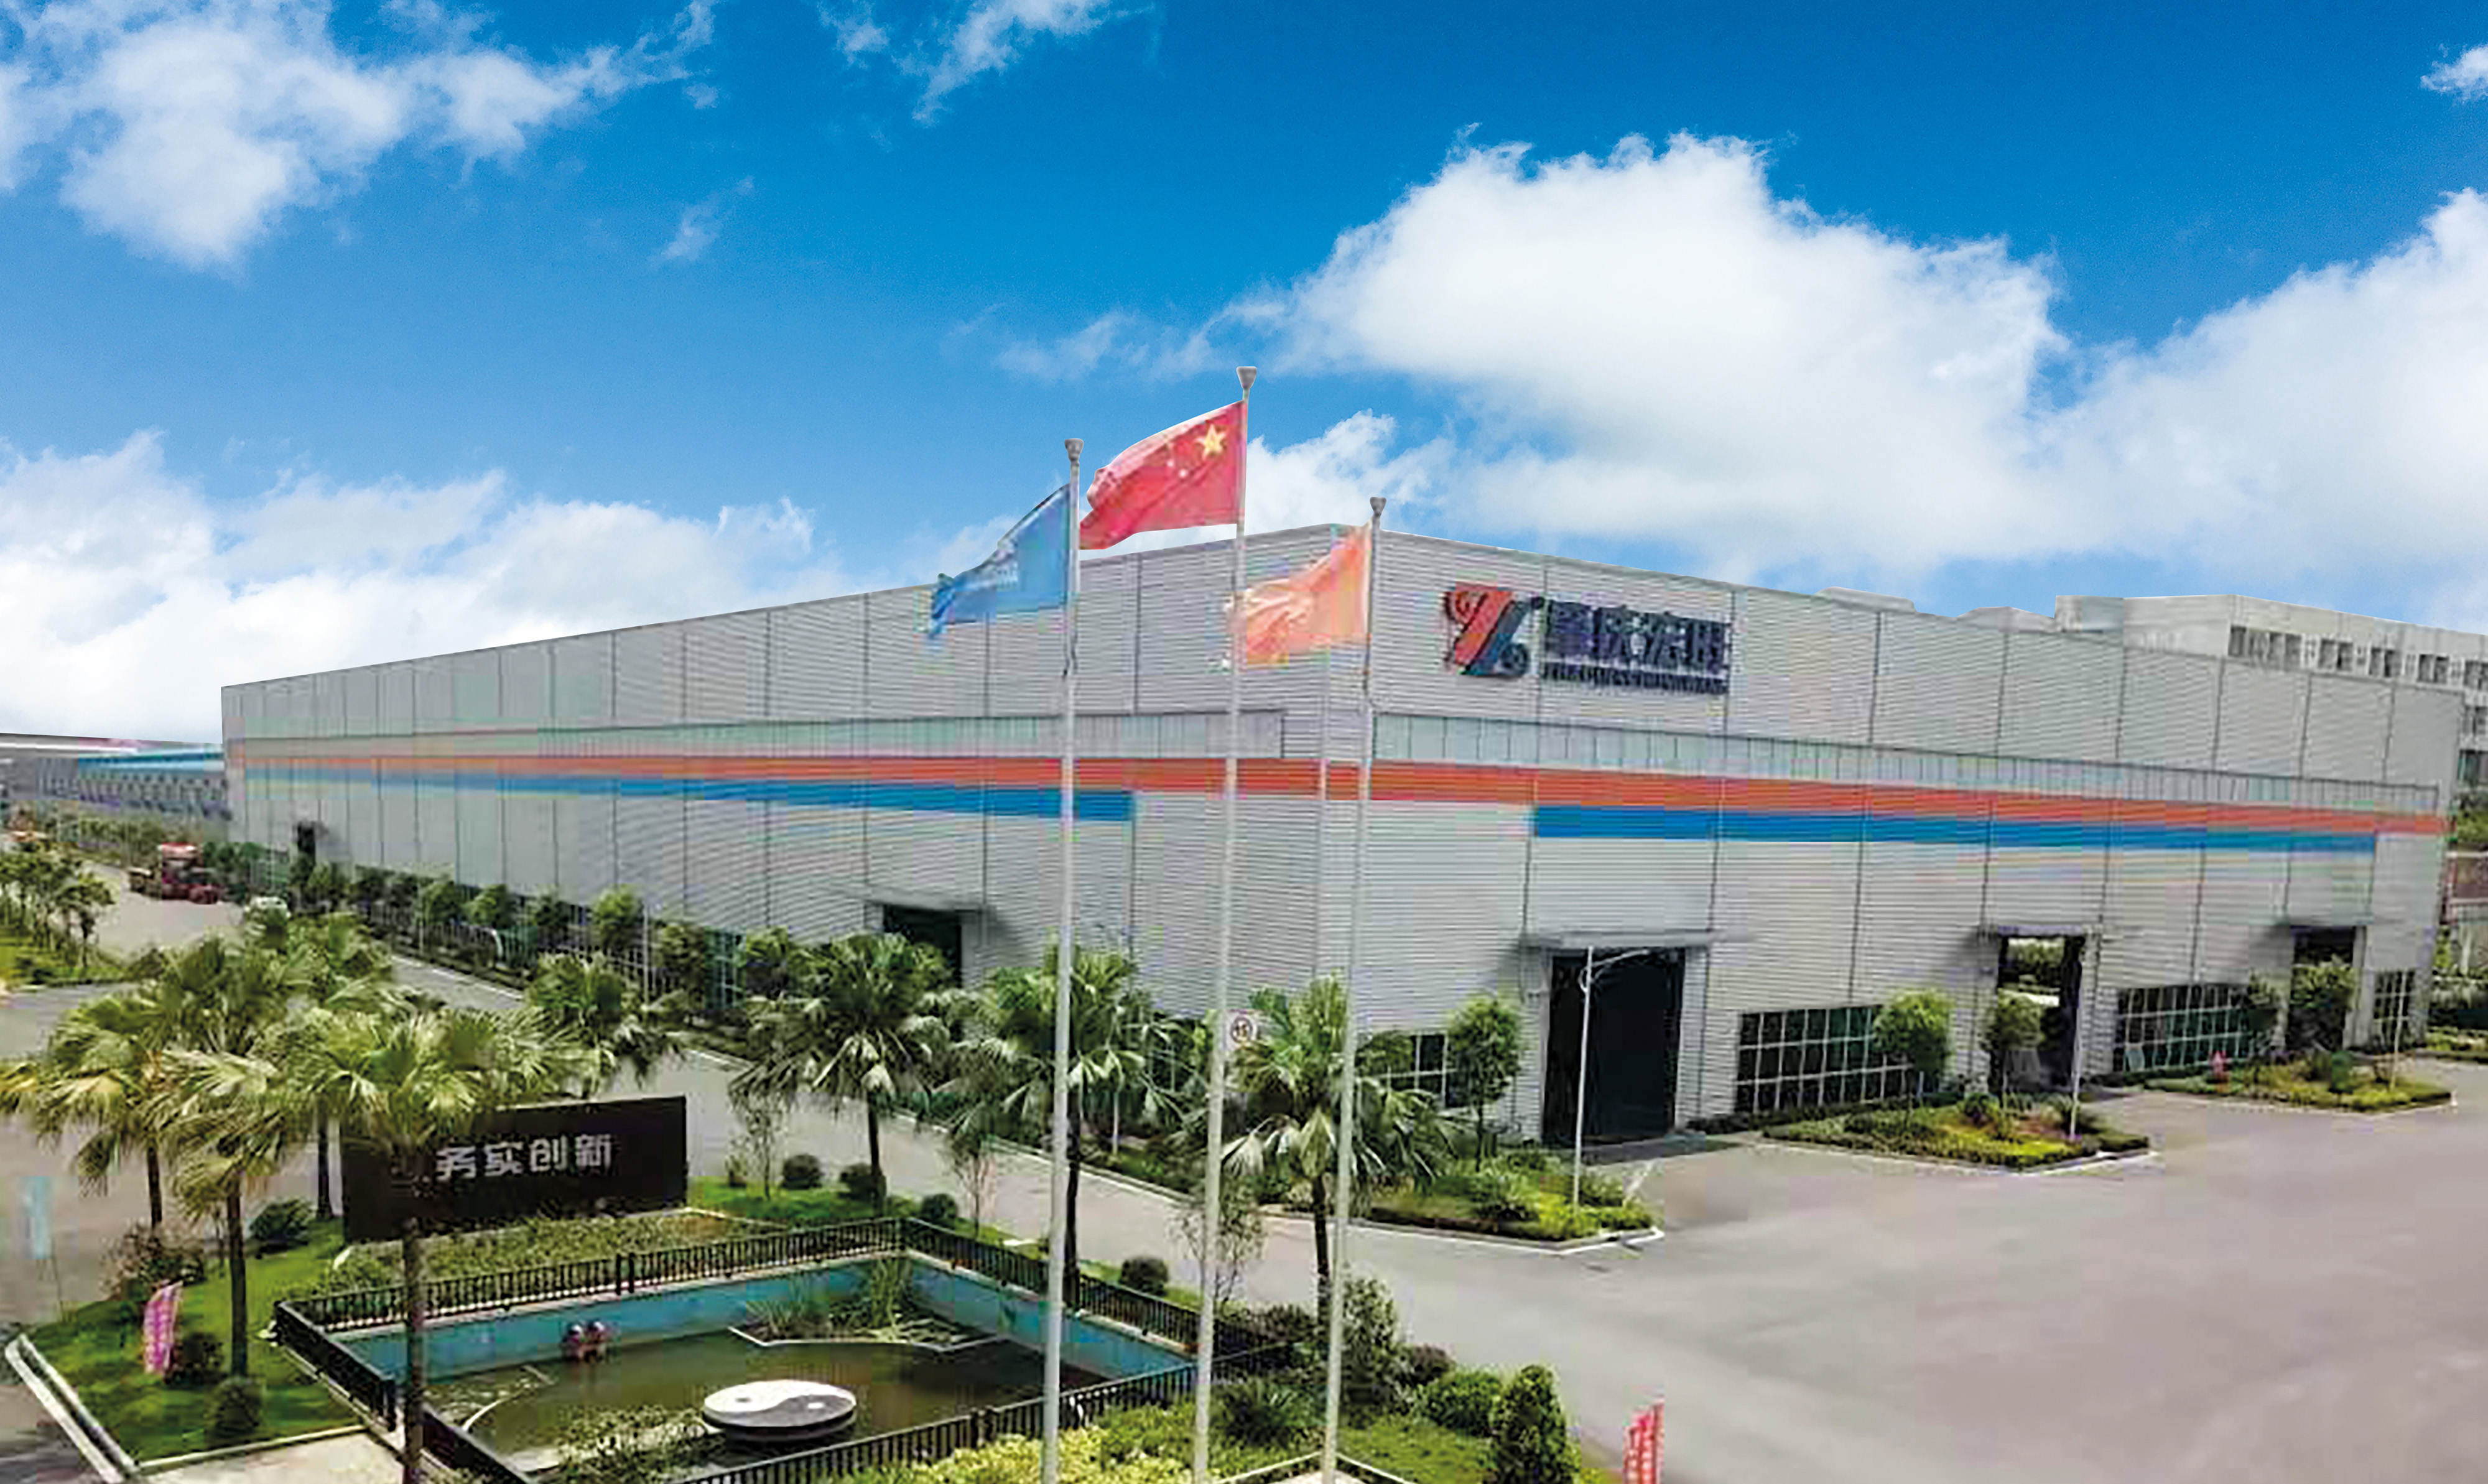 Vuonna 2006 perustettu Foshan Hermdeco steel co., LTD. Kuuluu hongwang-konserniin ja on sitoutunut ruostumattoman teräksen innovaatioihin ja laatuun jo yli 10 vuoden ajan. , käsittely yhtenä suurista kattavista yrityksistä.